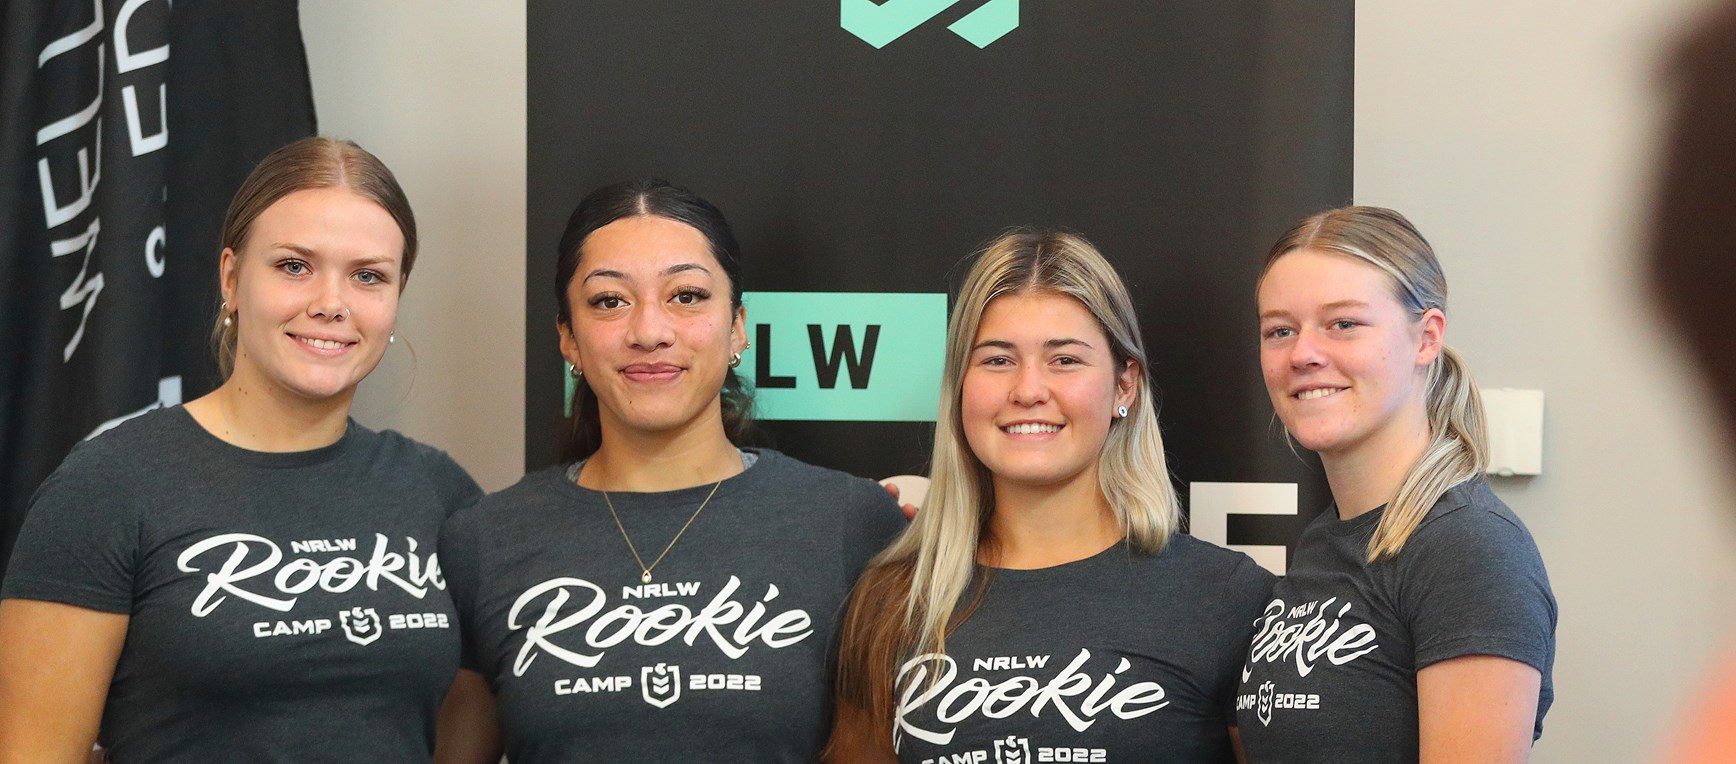 Gallery: NRLW Rookie Camp 2022